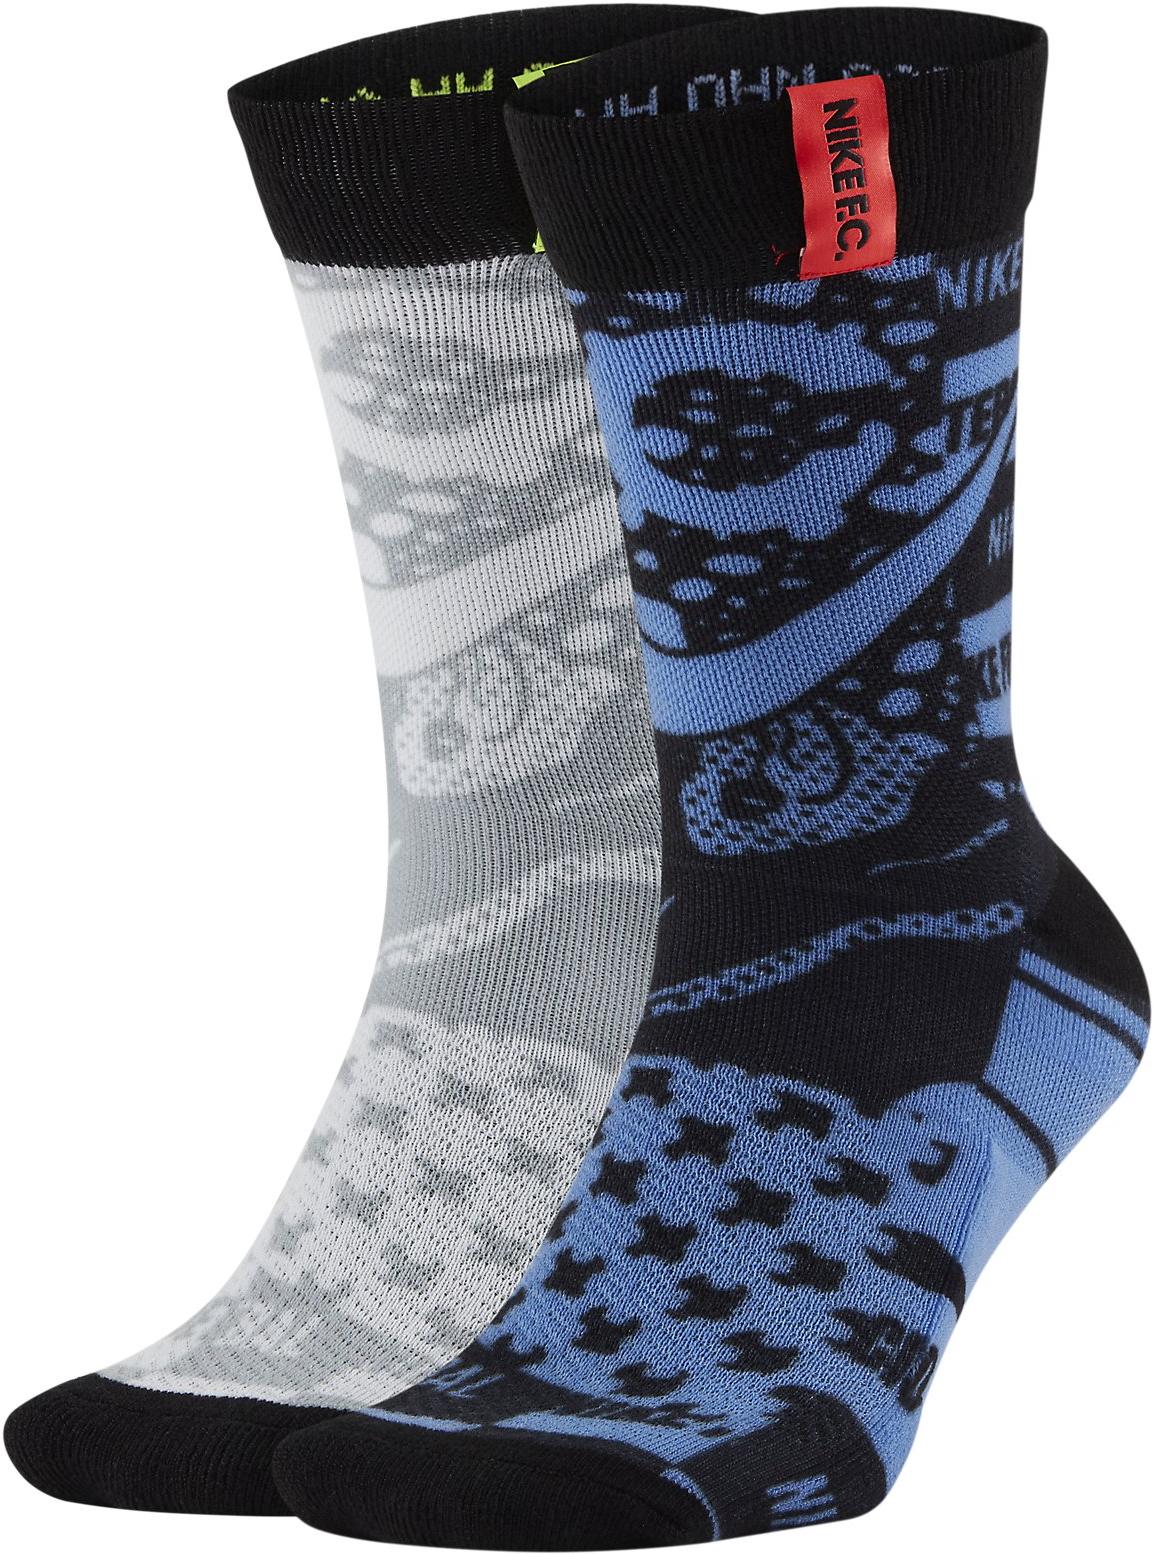 Středně vysoké fotbalové ponožky s grafickým motivem (2 páry) Nike F.C.